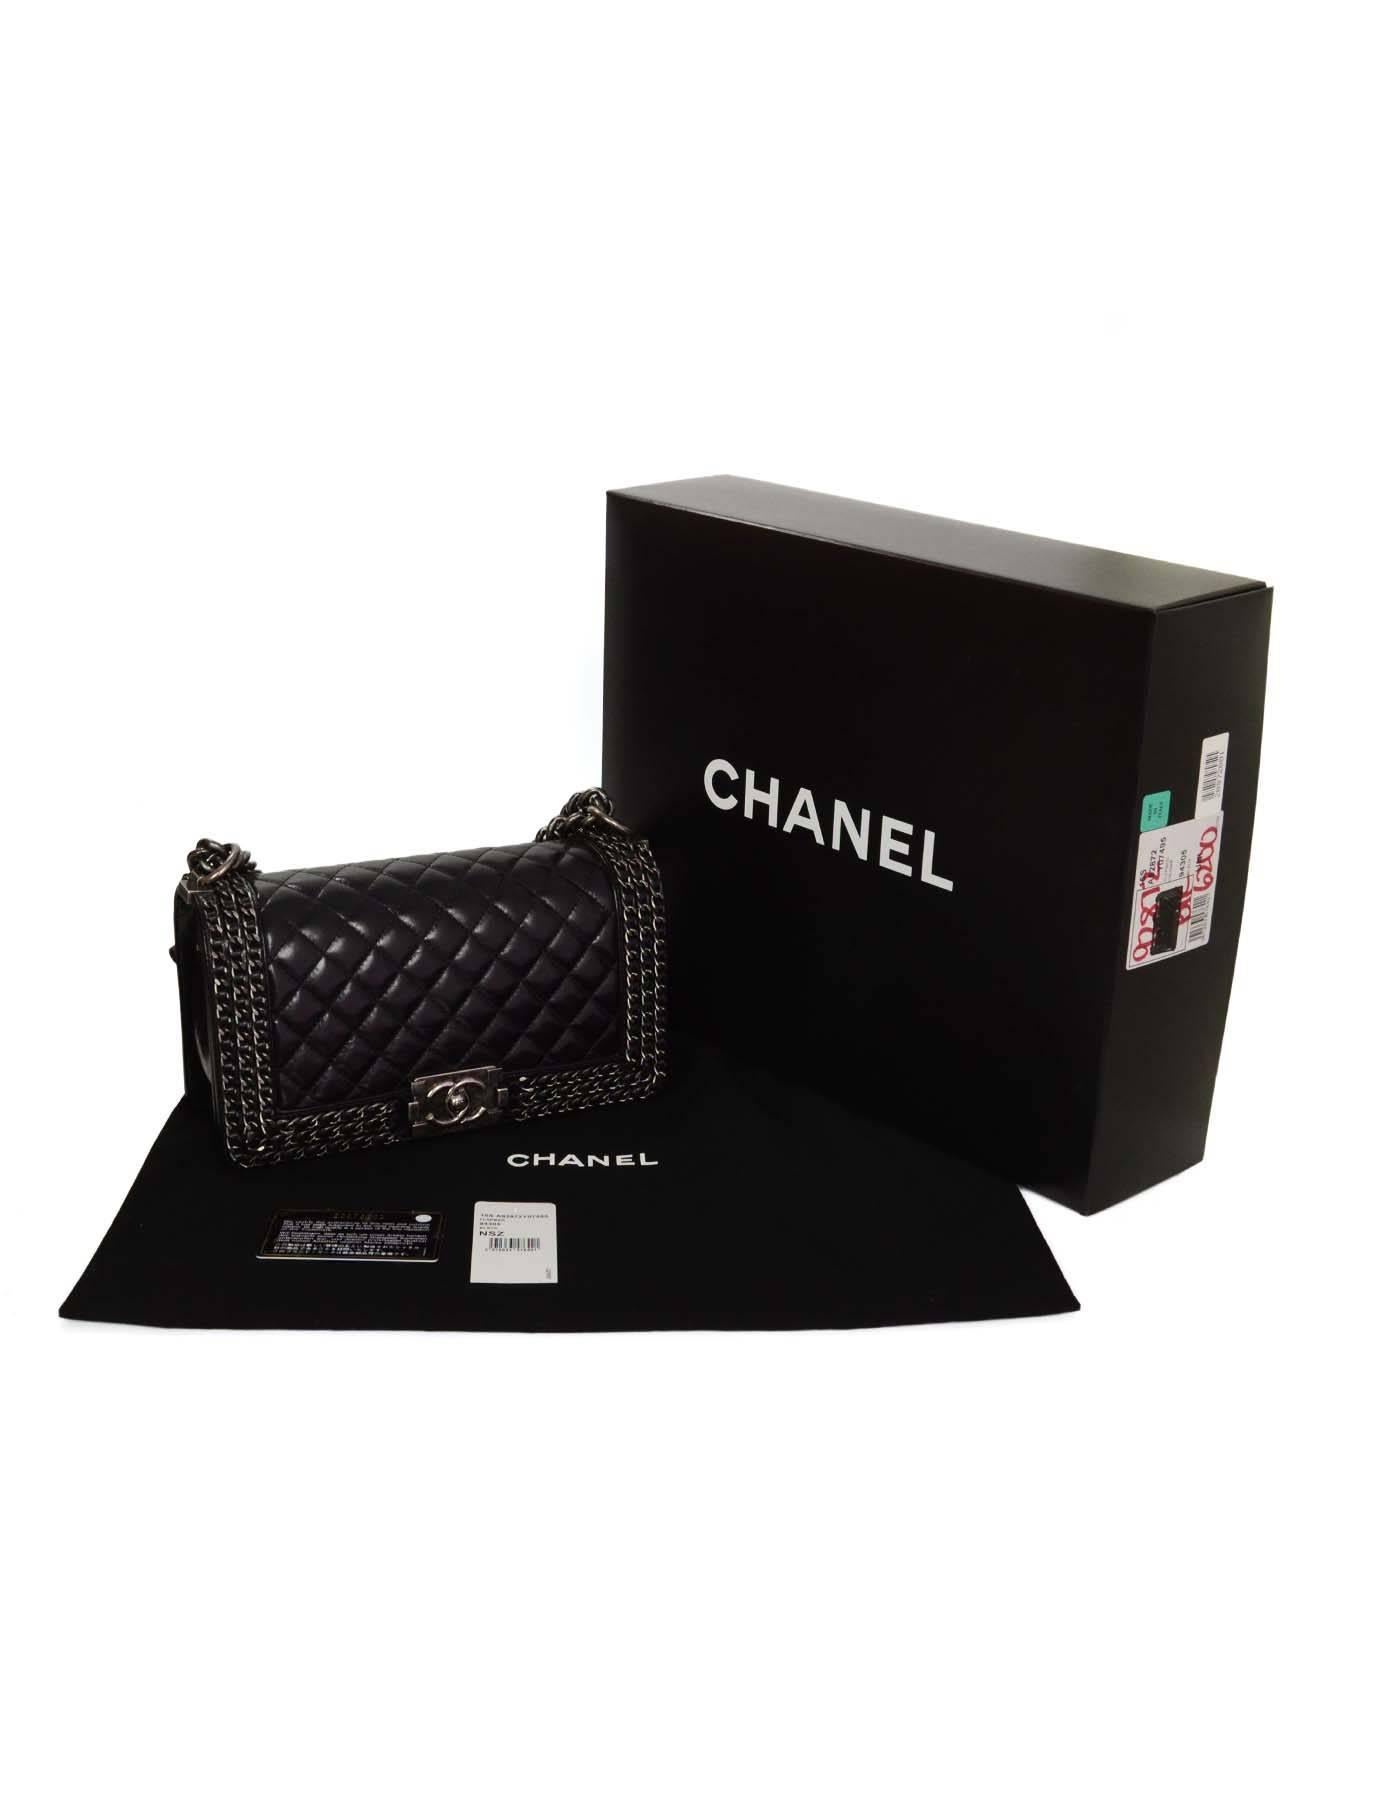 Chanel '15 Black Distressed Leather Chain Around Medium Boy Bag SHW 1